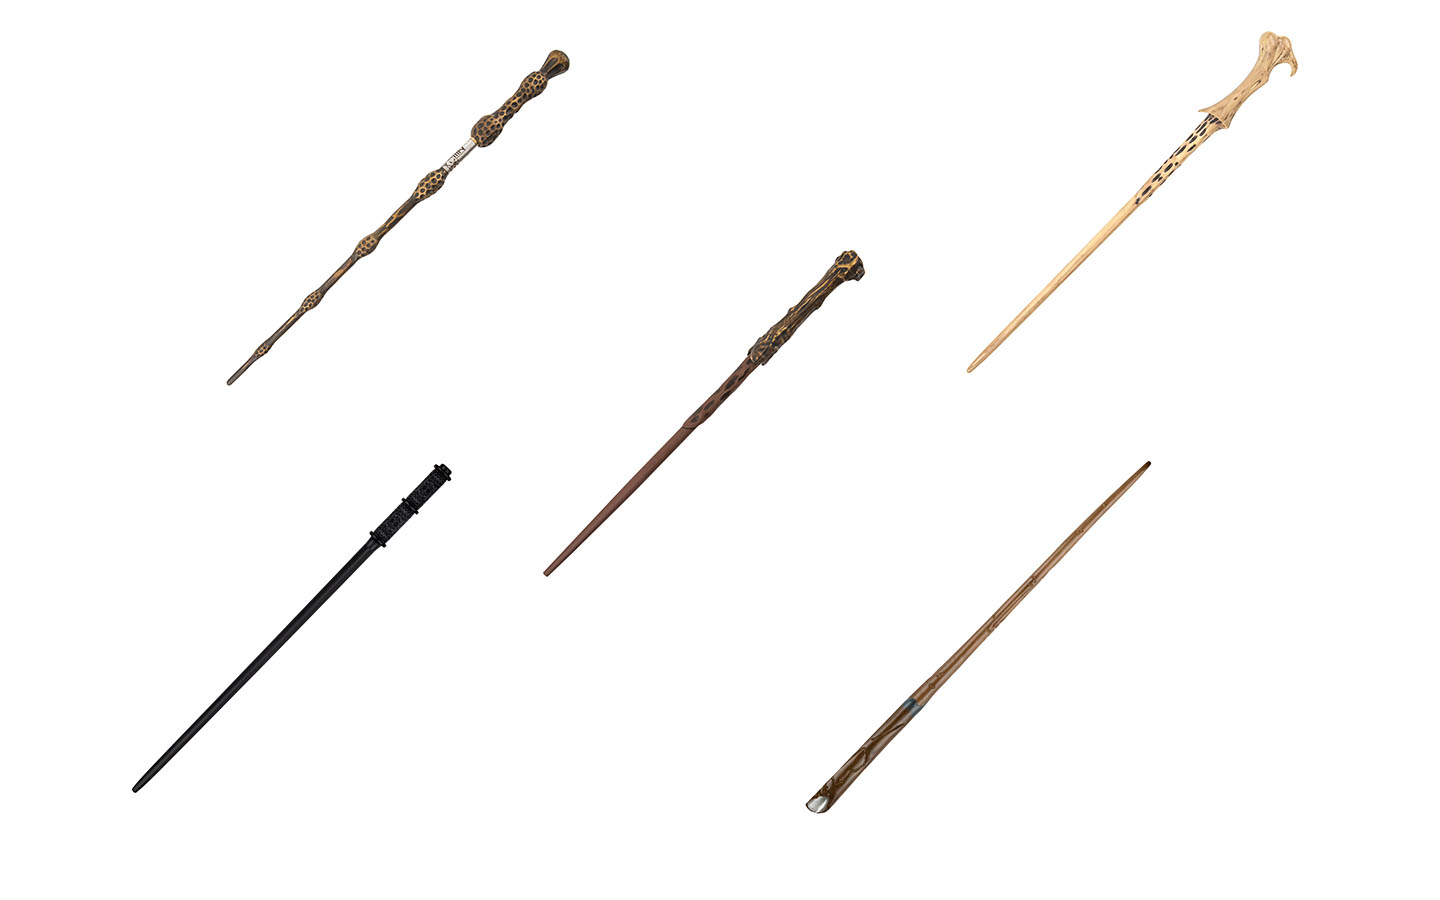 Maho Koro Harry Potter wand biros.